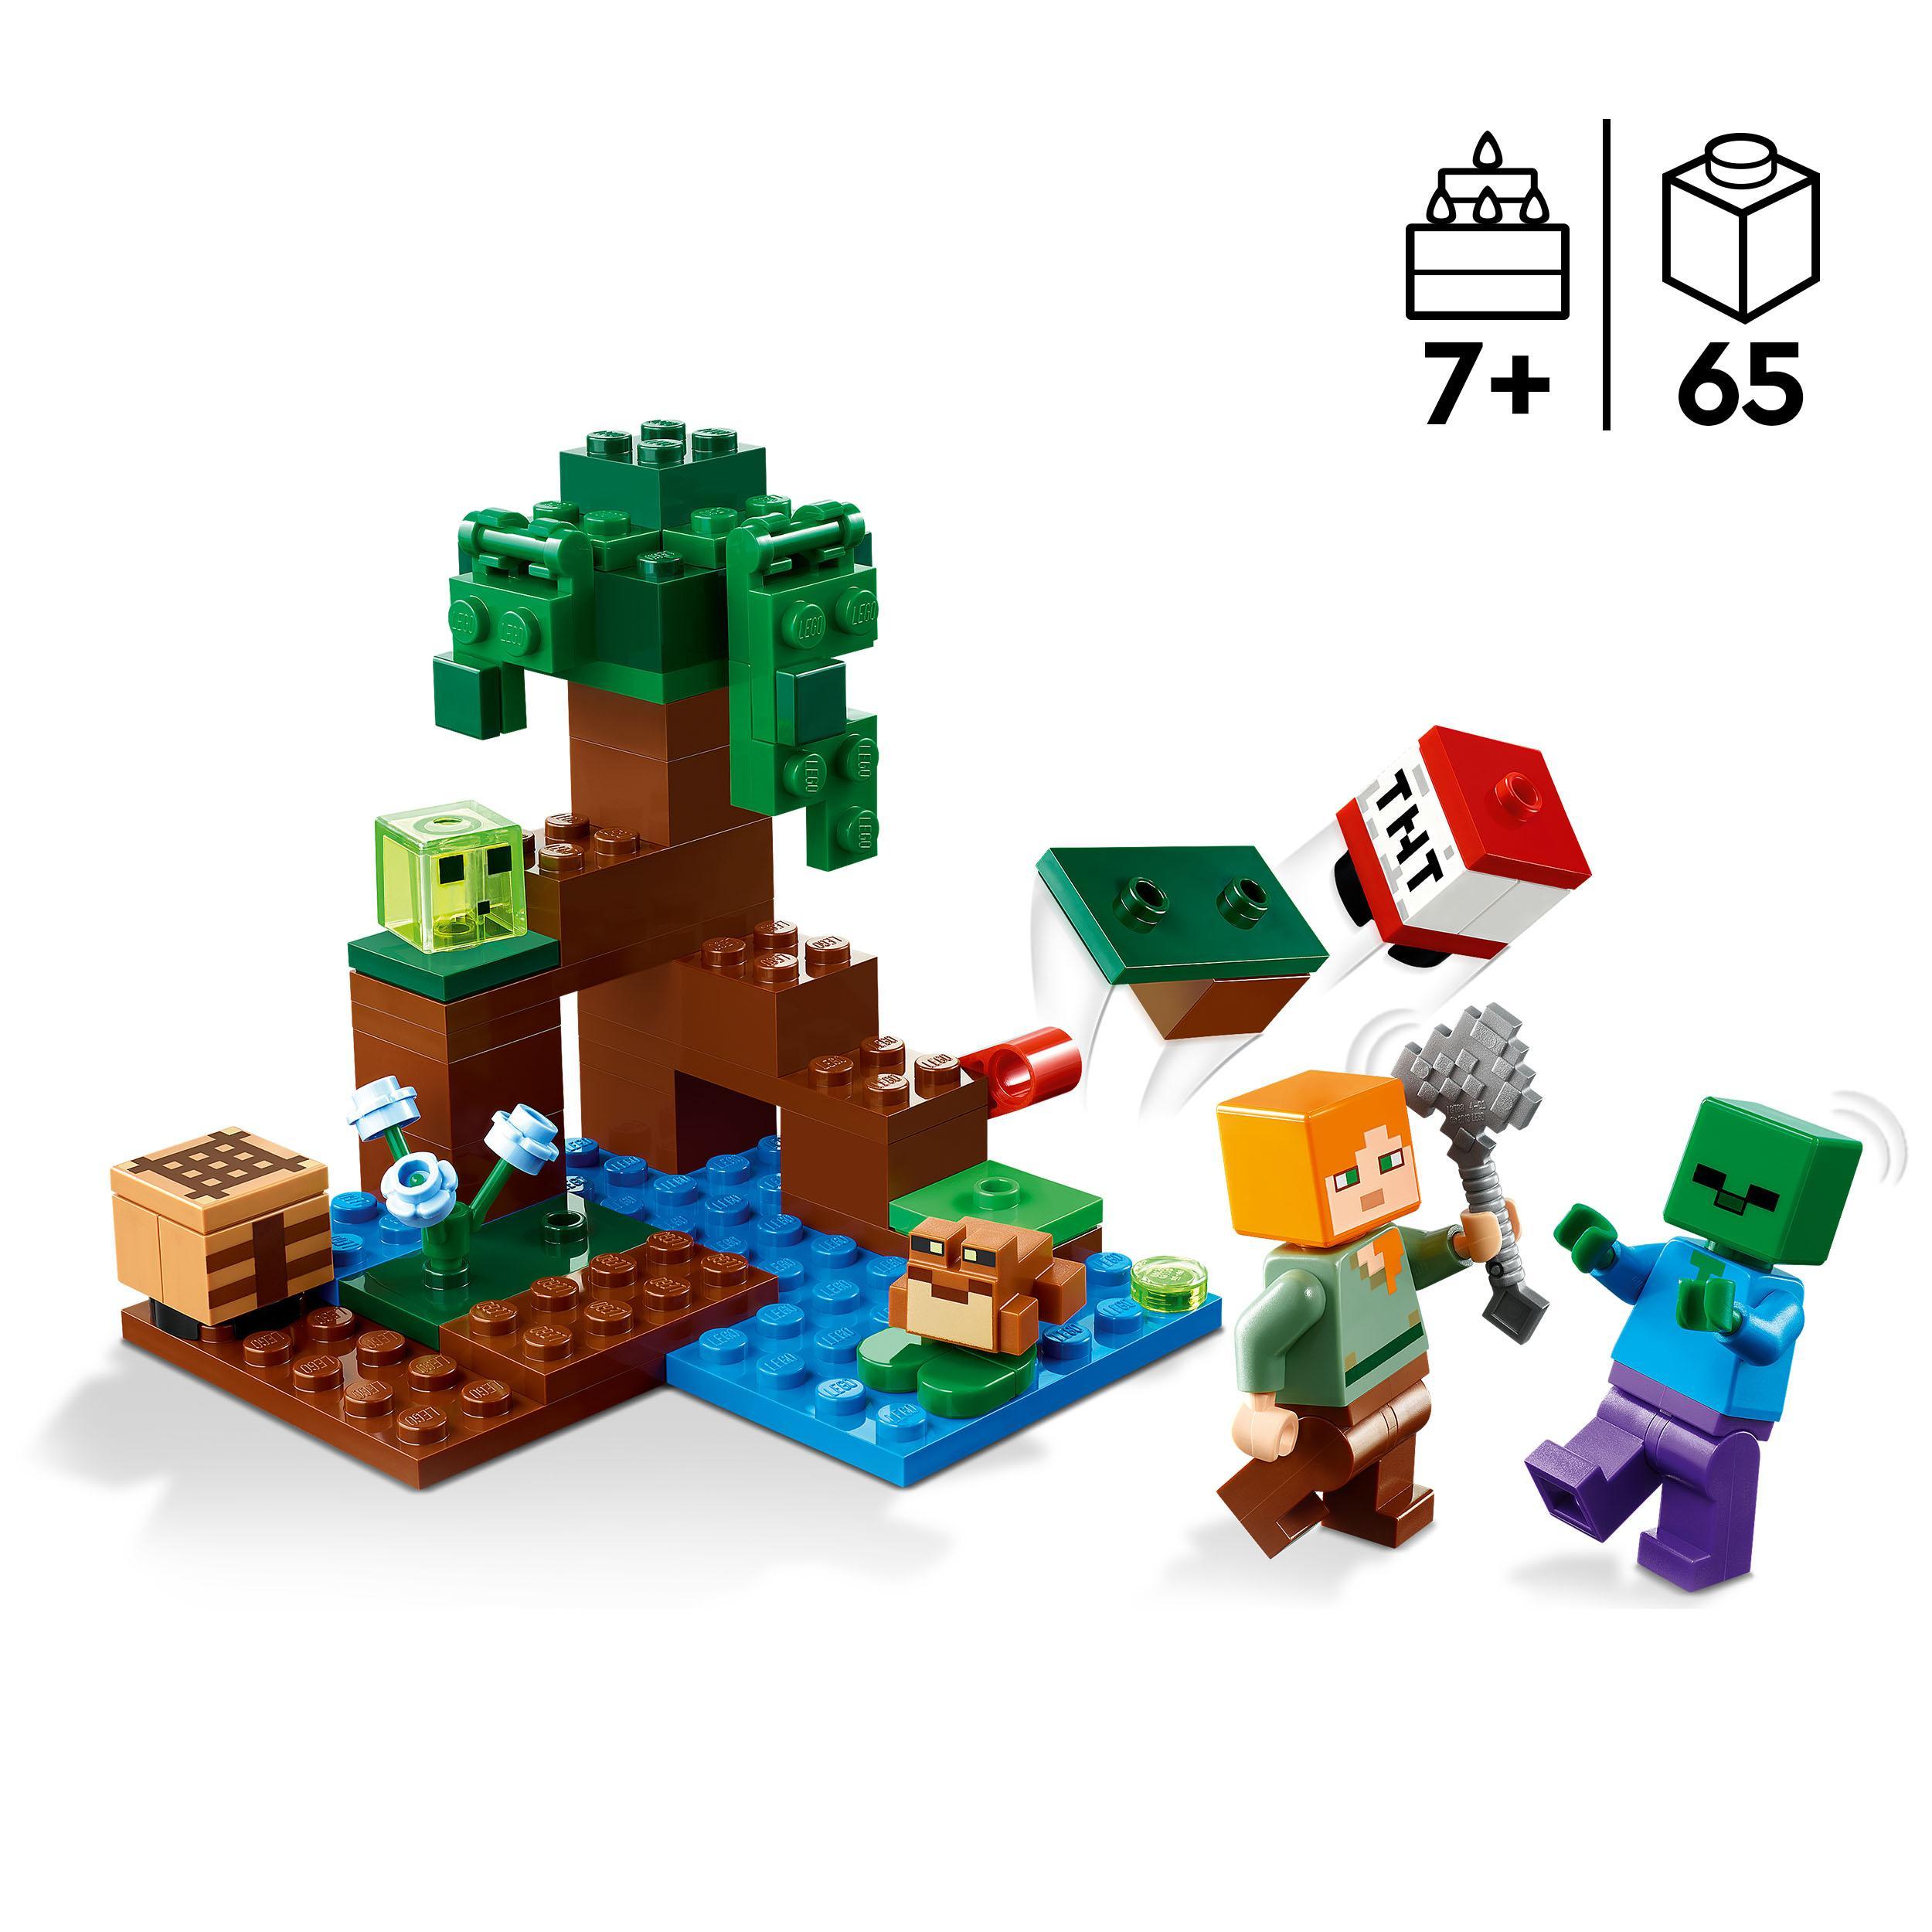 Lego minecraft 21240 avventura nella palude, modellino da costruire con personaggi di alex e zombie, giochi per bambini - MINECRAFT